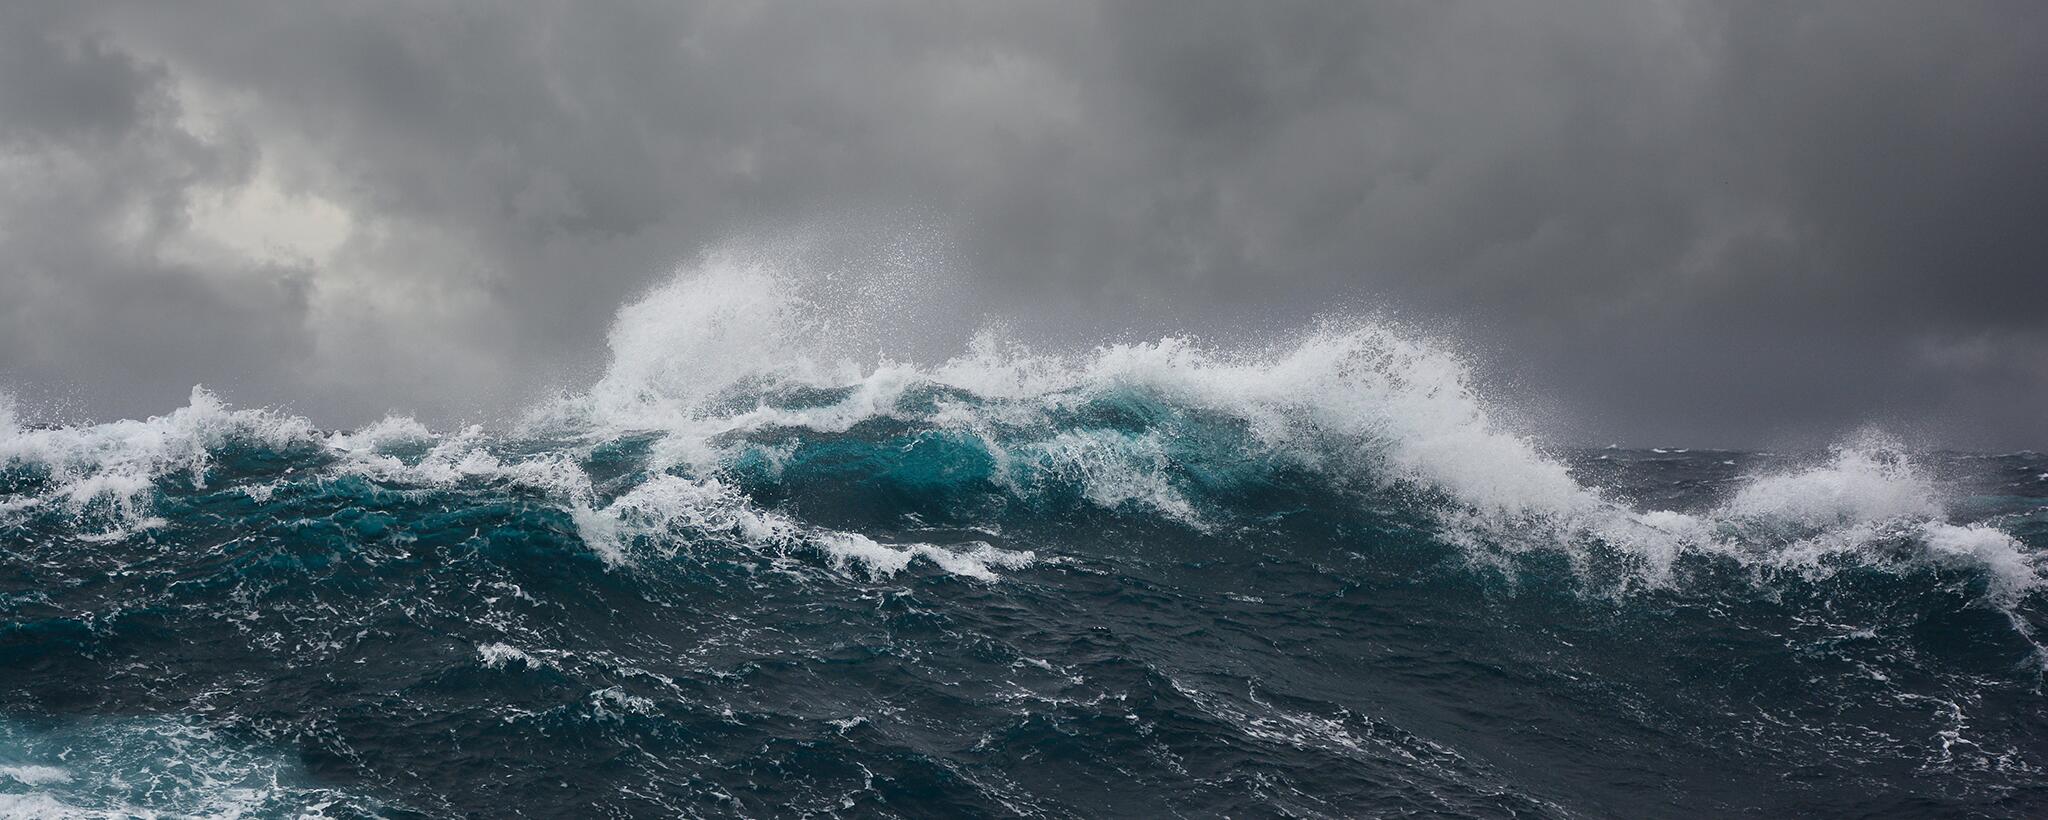 ocean waves in a storm